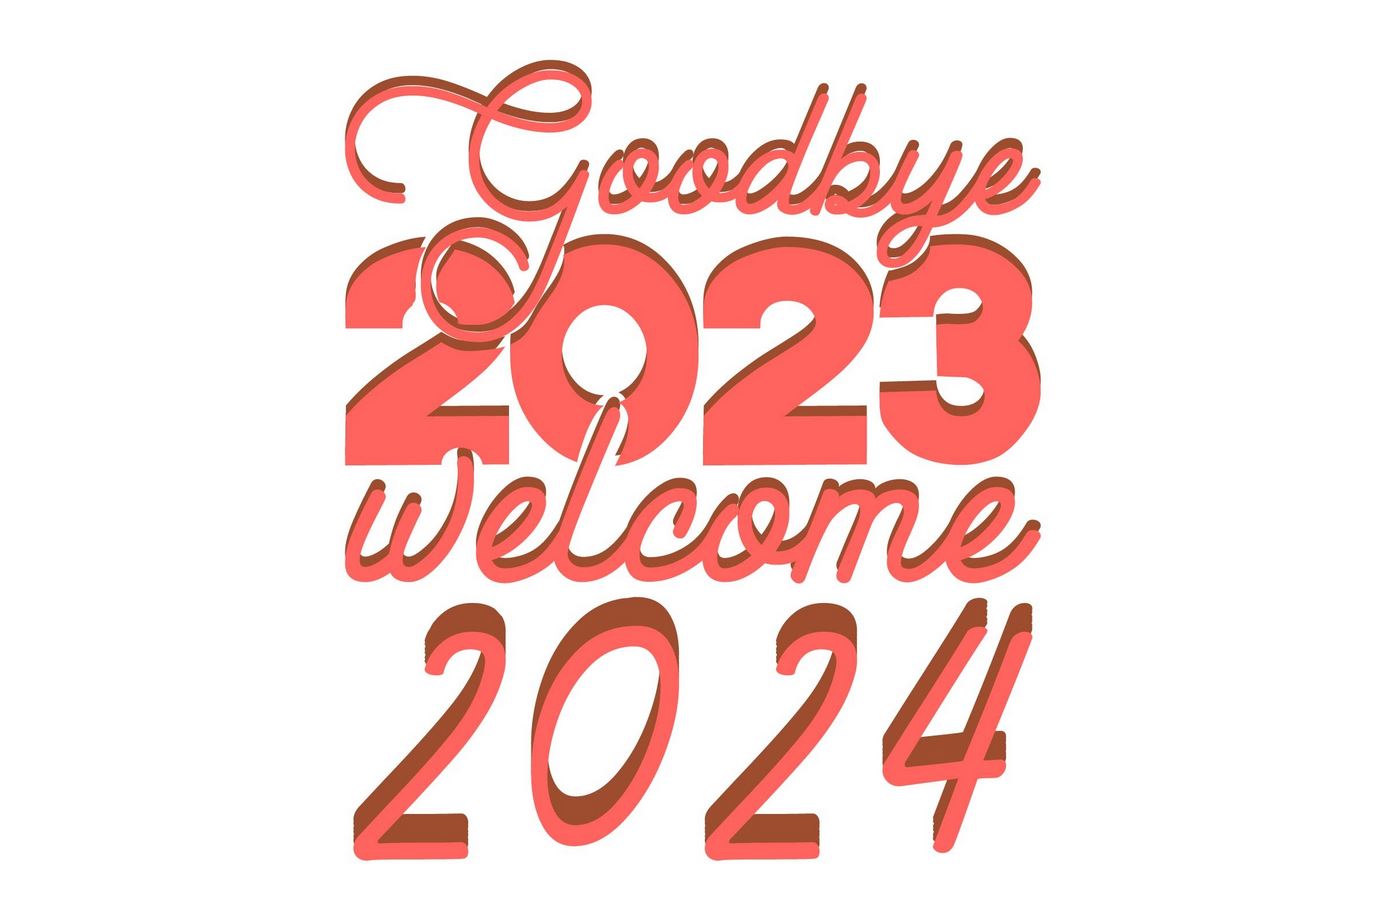 Welcome 2024 Goodbye 2023